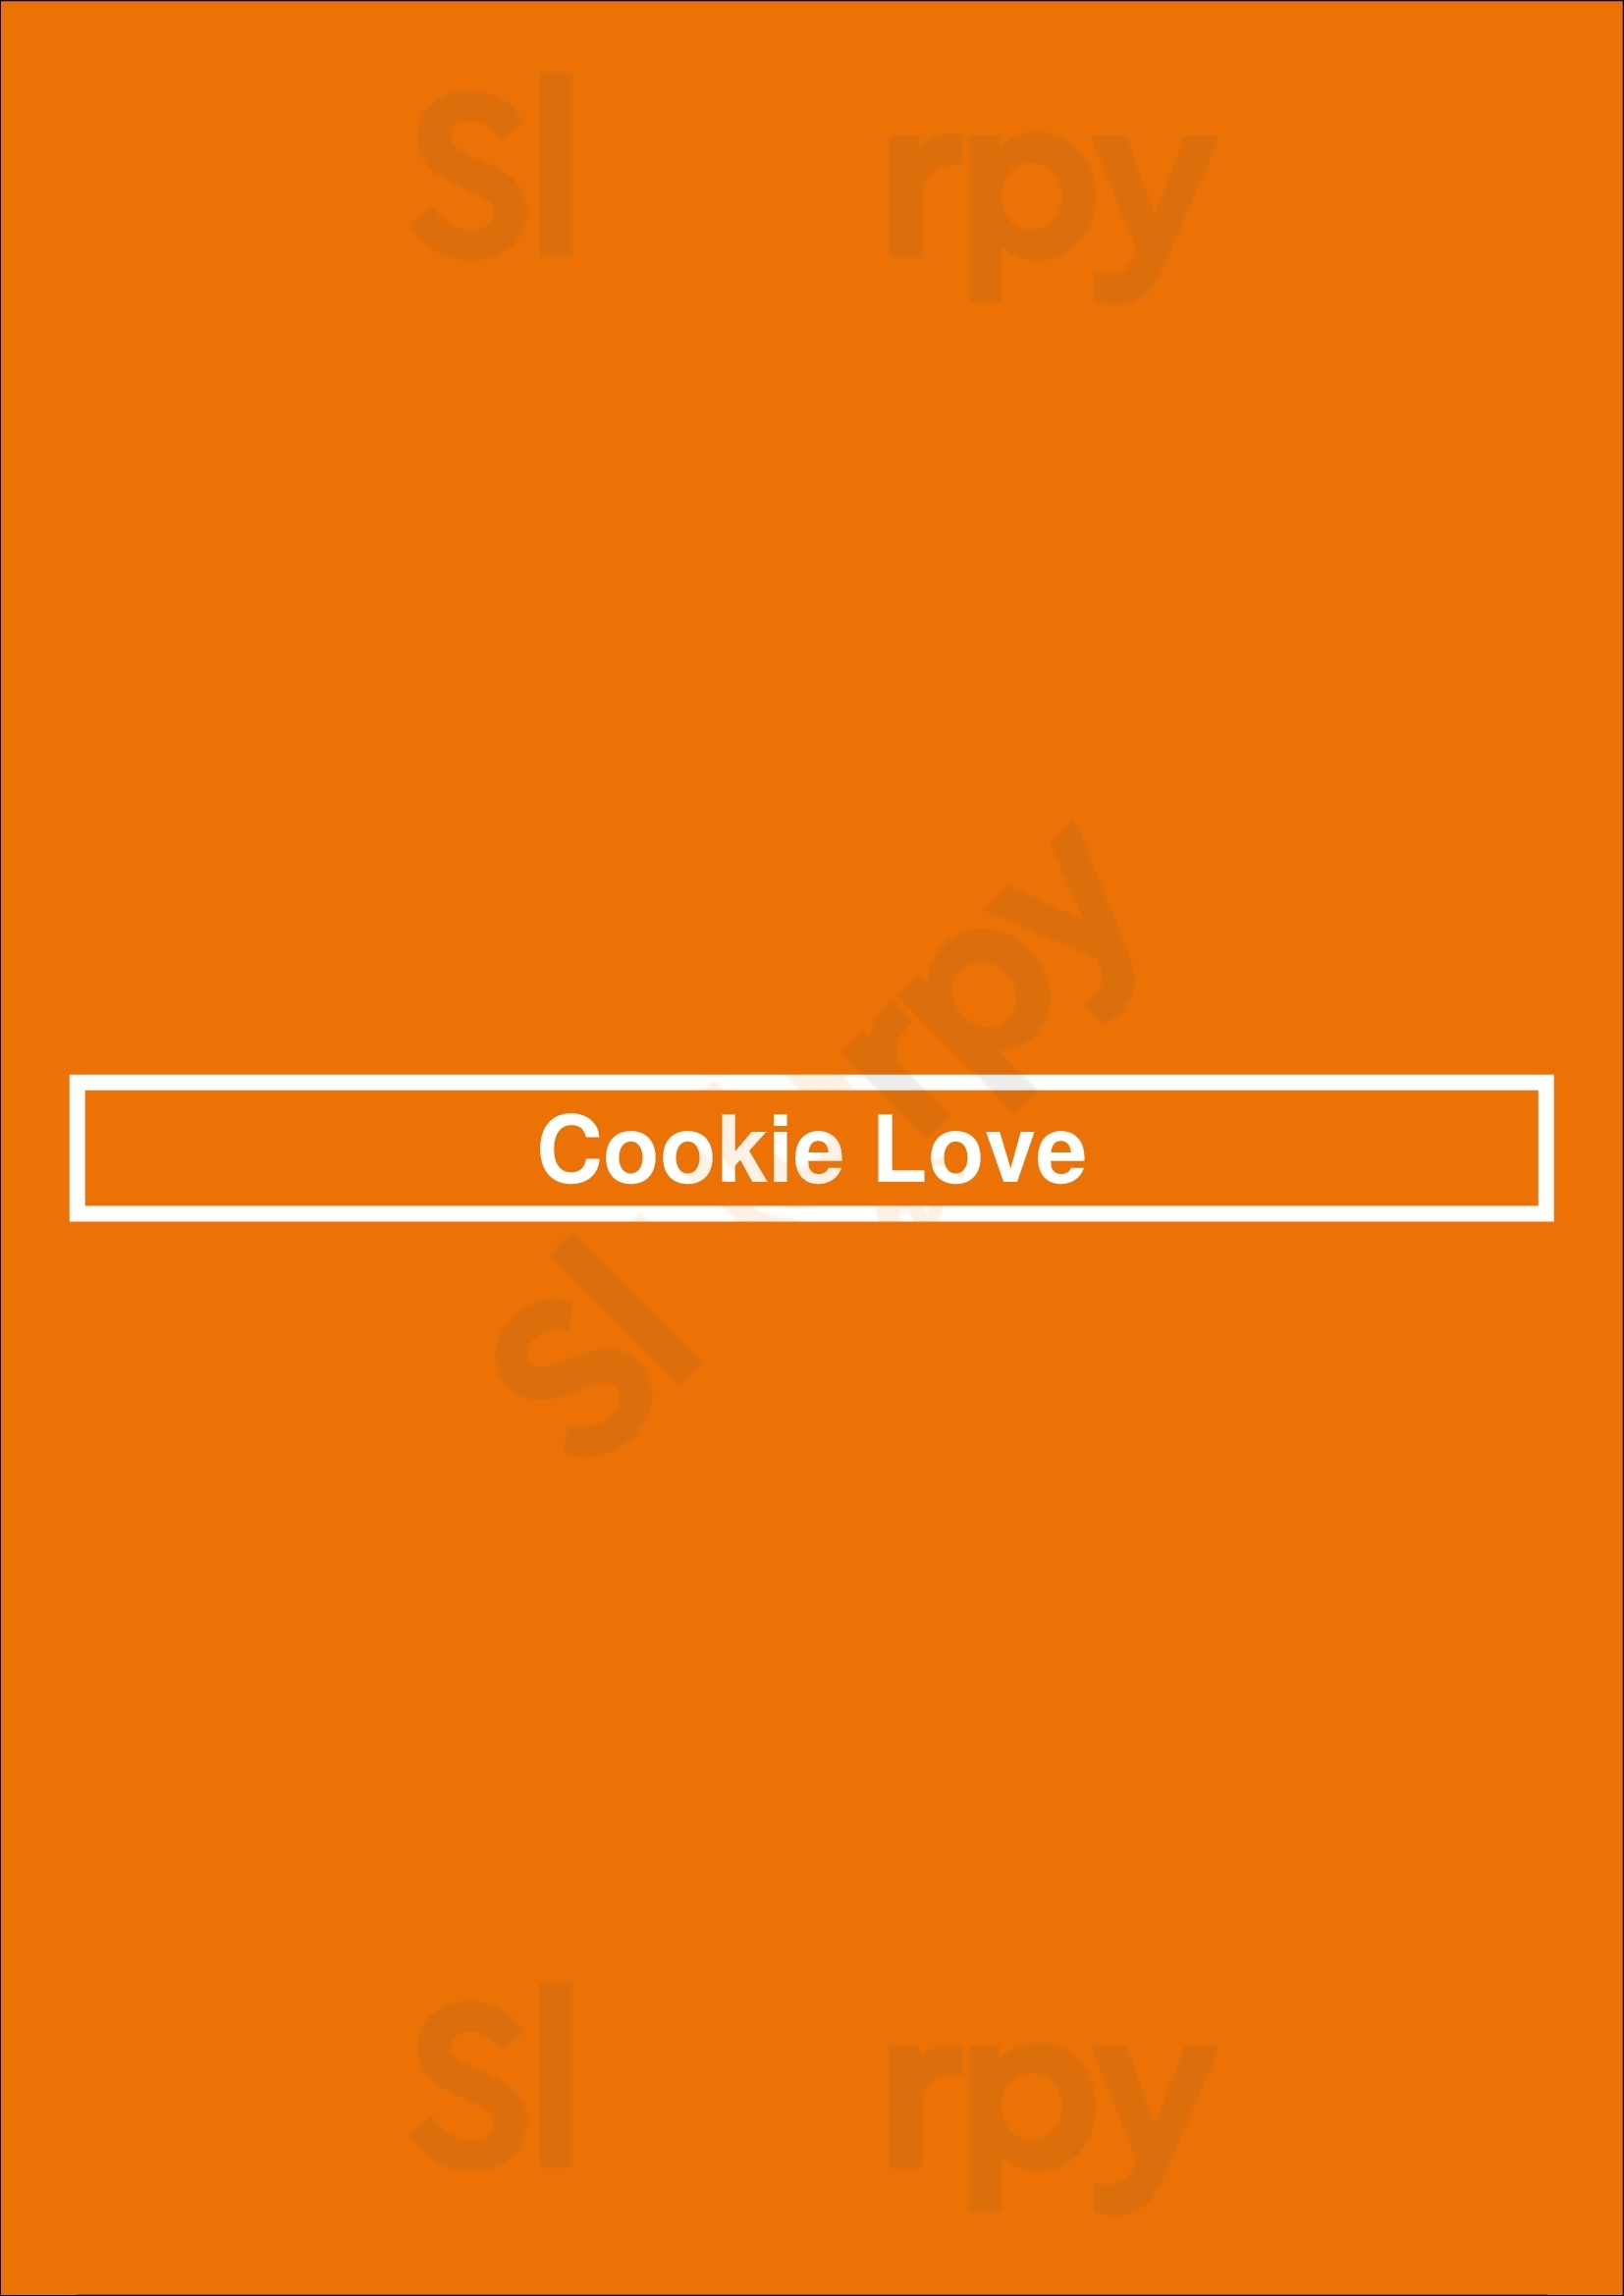 Cookie Love San Francisco Menu - 1